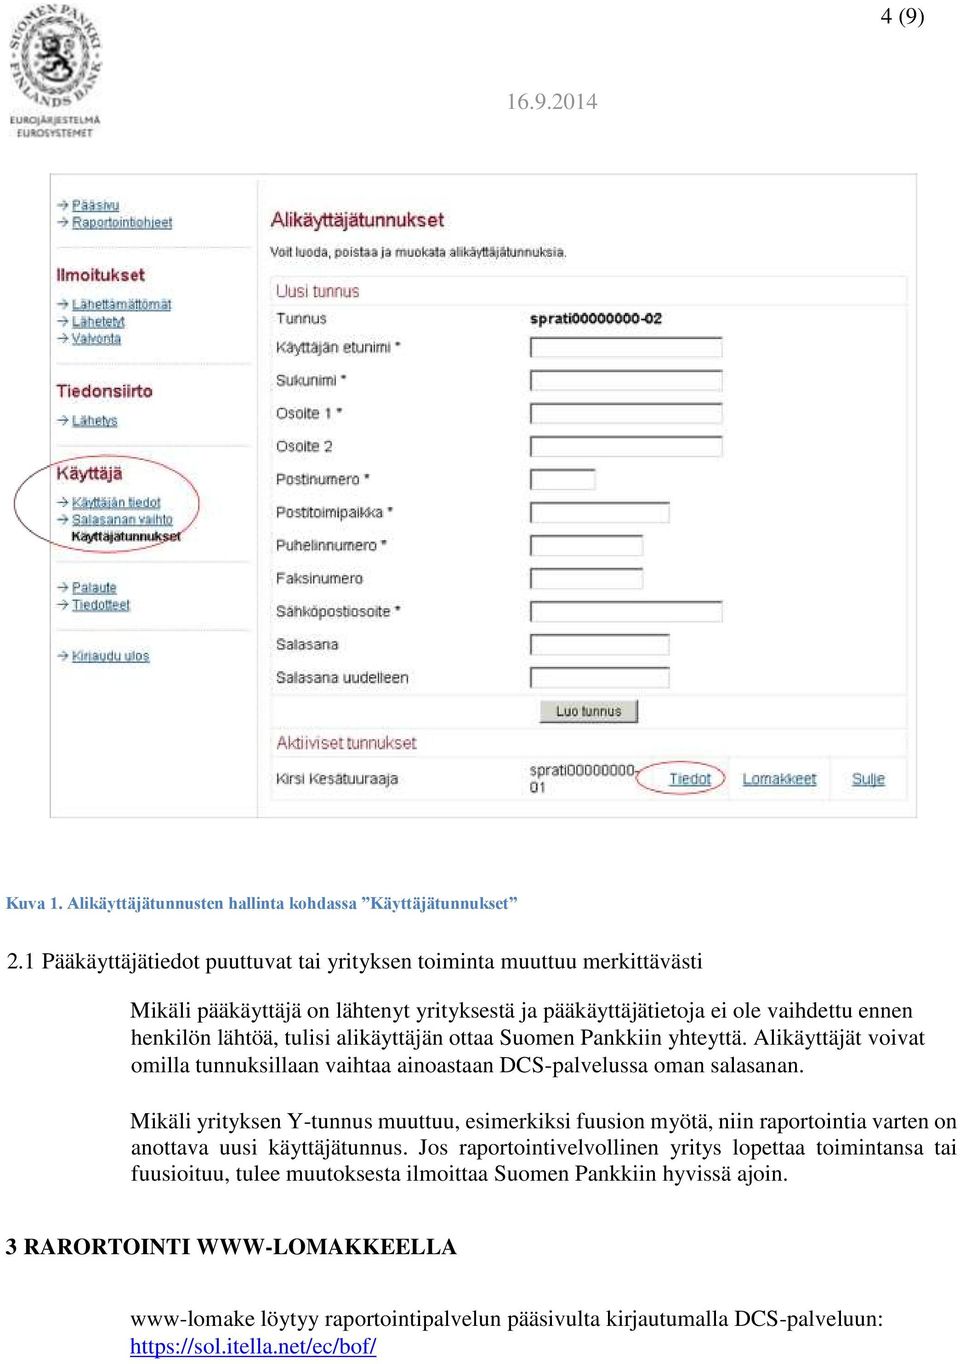 alikäyttäjän ottaa Suomen Pankkiin yhteyttä. Alikäyttäjät voivat omilla tunnuksillaan vaihtaa ainoastaan DCS-palvelussa oman salasanan.